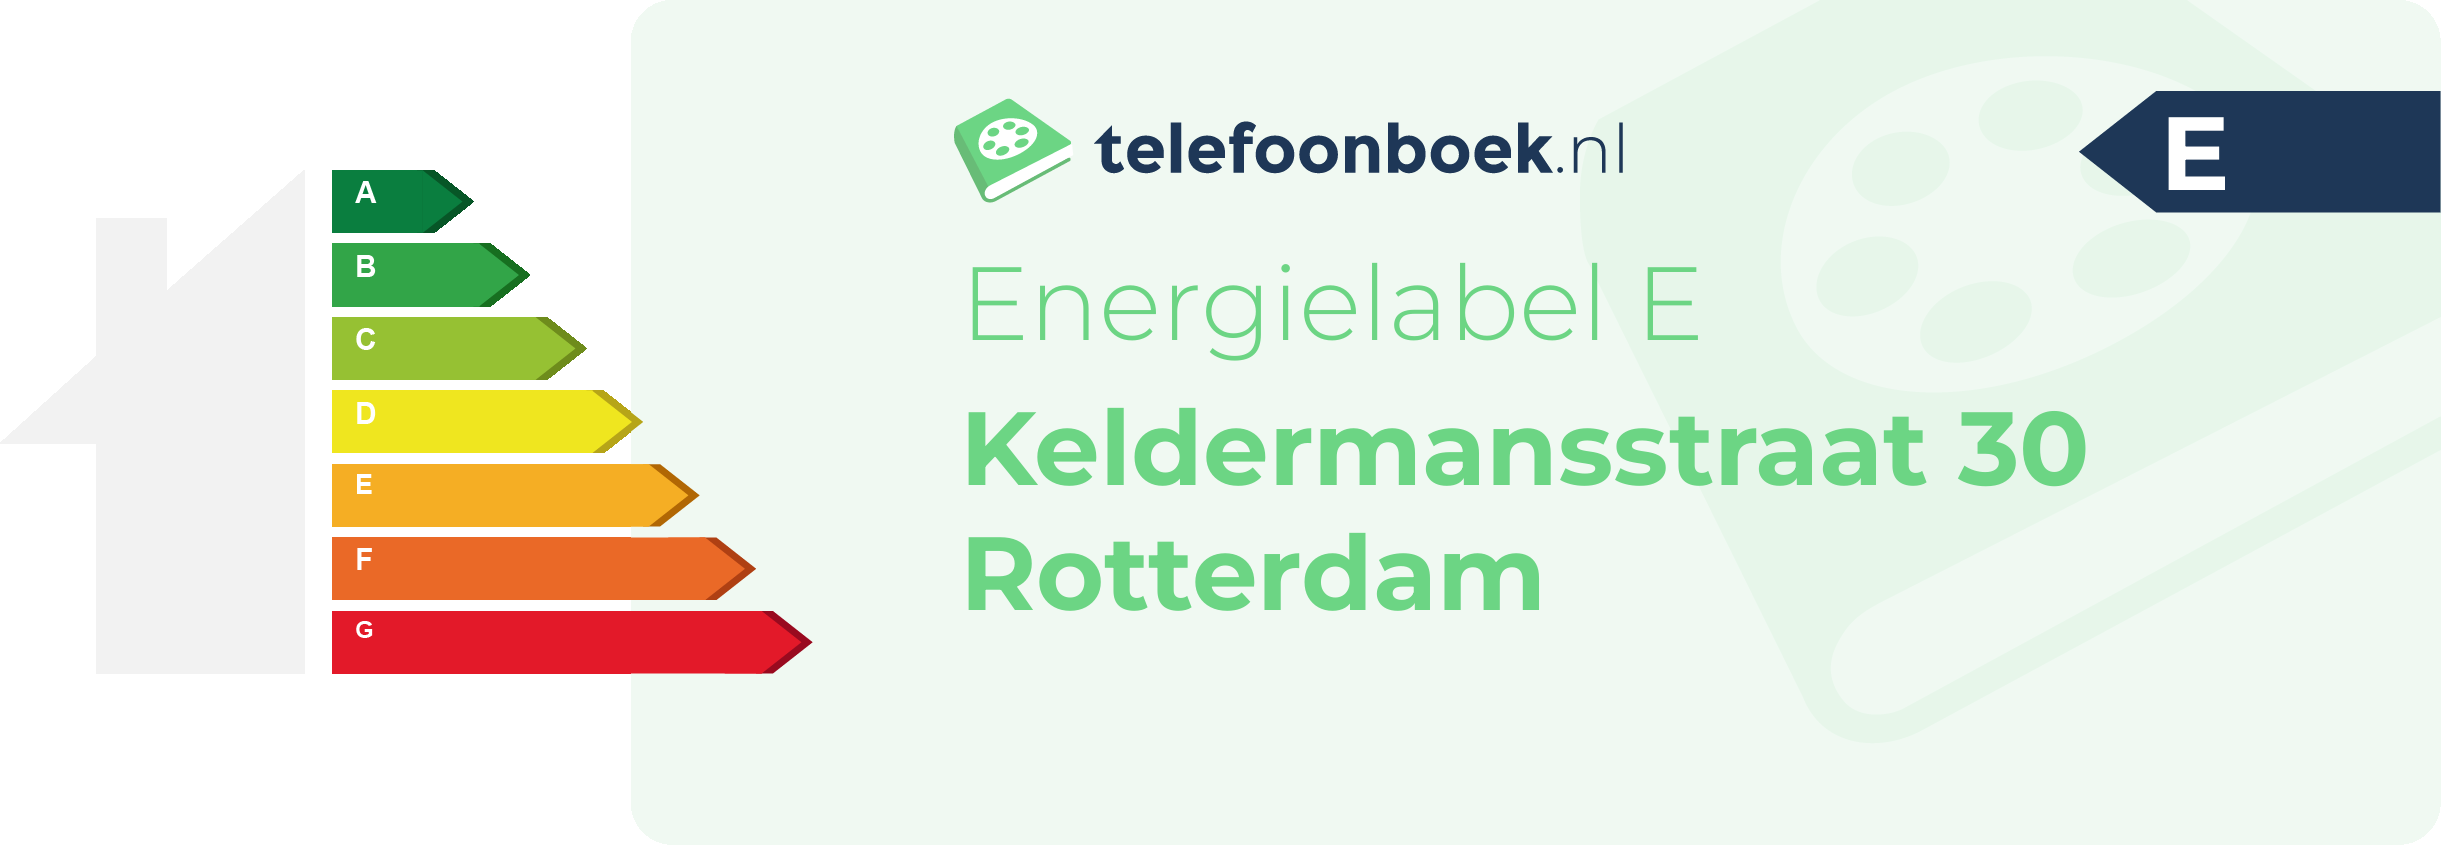 Energielabel Keldermansstraat 30 Rotterdam